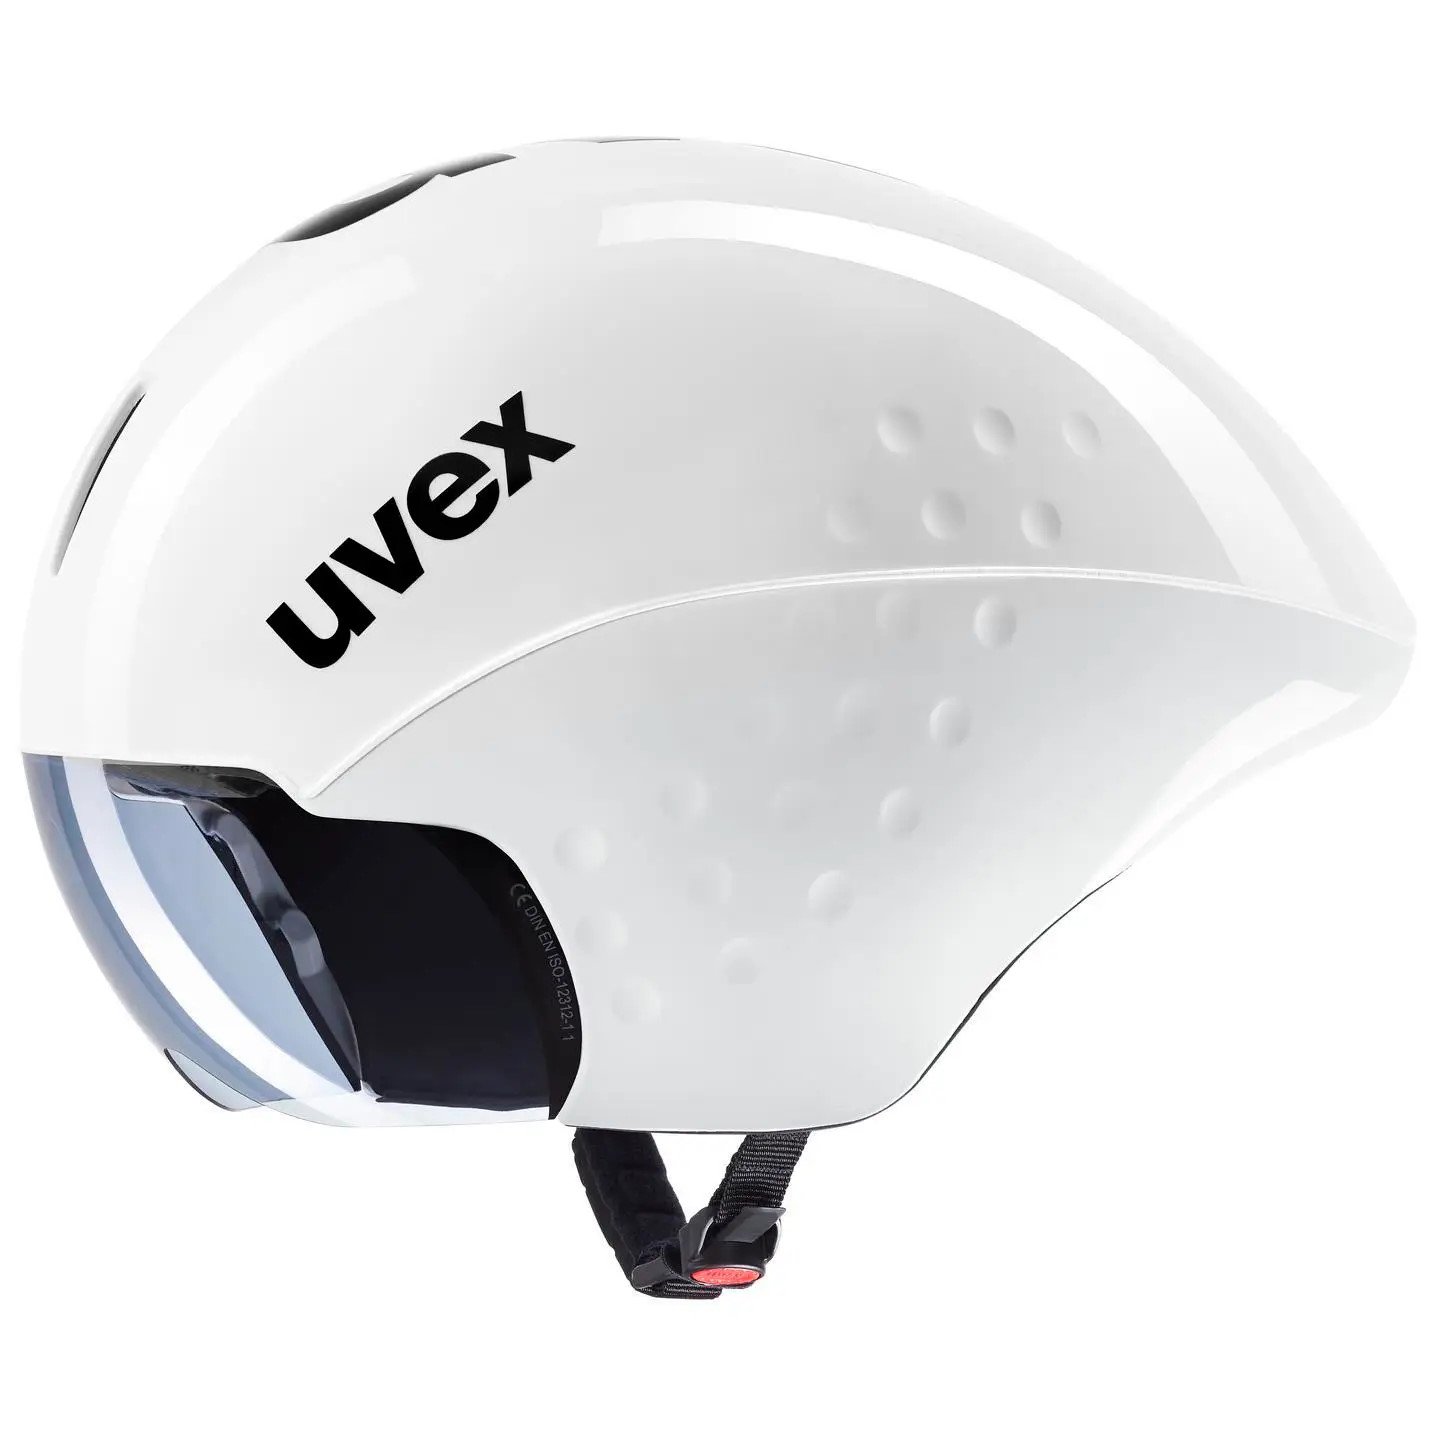 Productfoto van Uvex race 8 Helm - wit-zwart